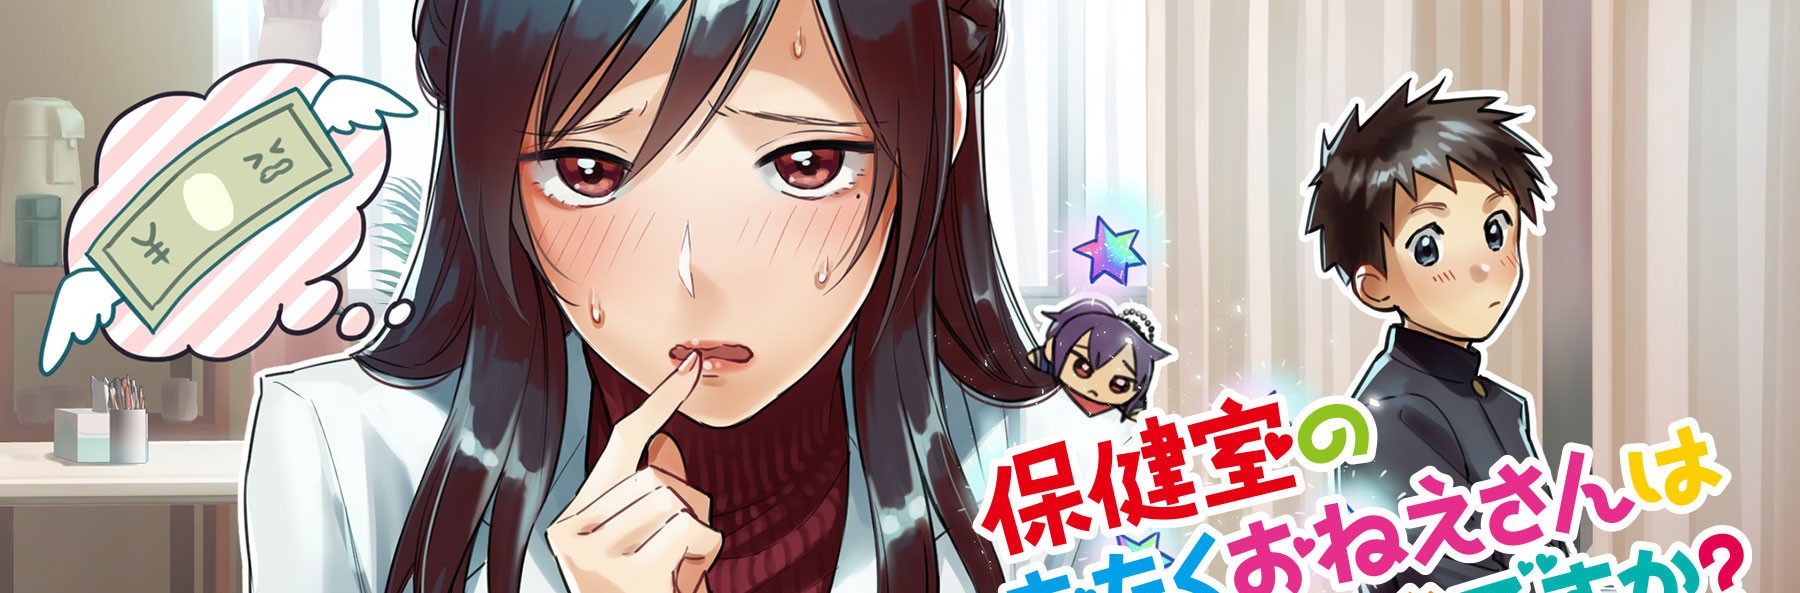 GANBARE! NAKAMURA-KUN!! é o novo mangá da New Pop – Tomodachi Nerd's